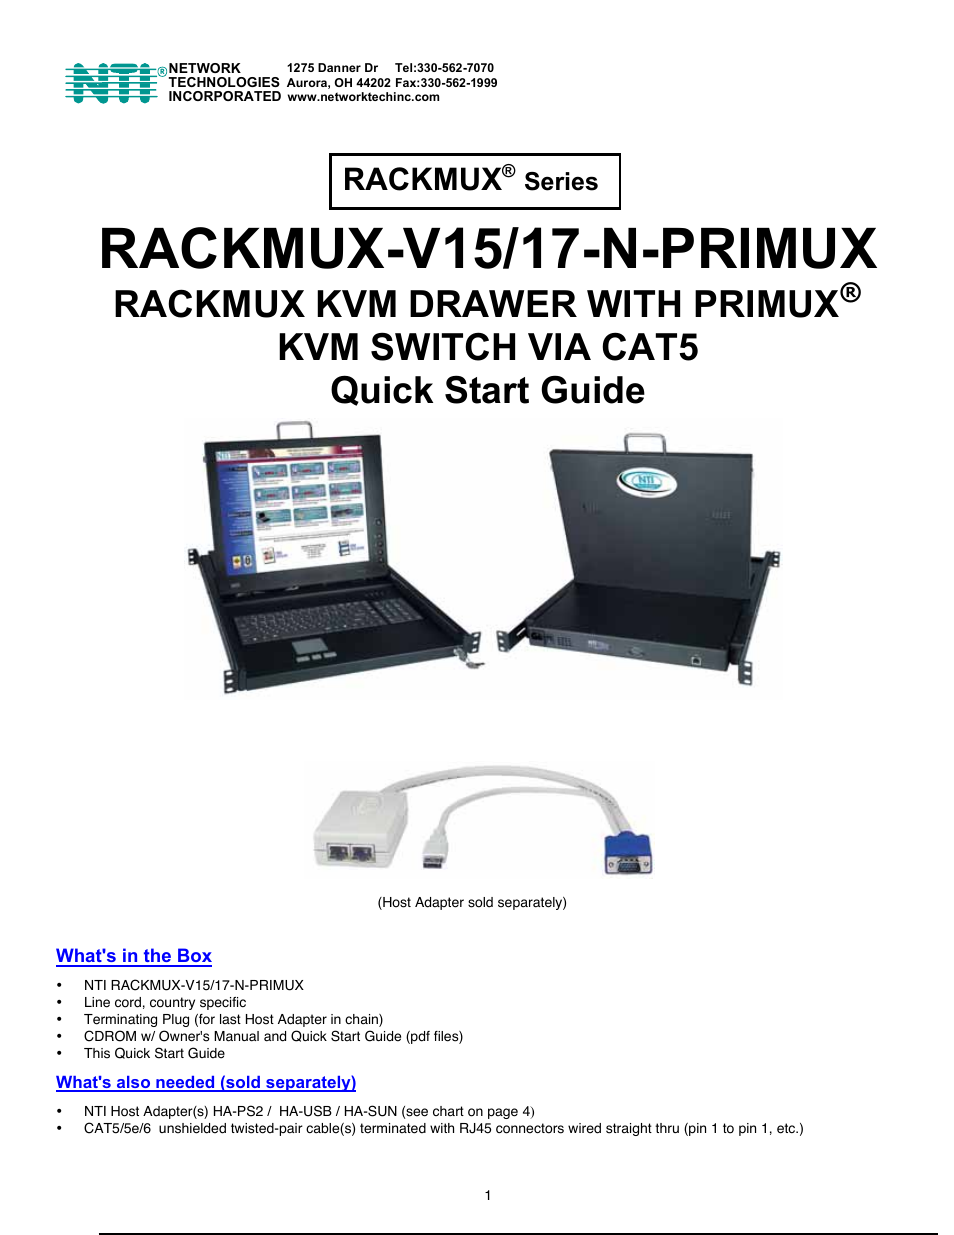 RACKMUX-V15